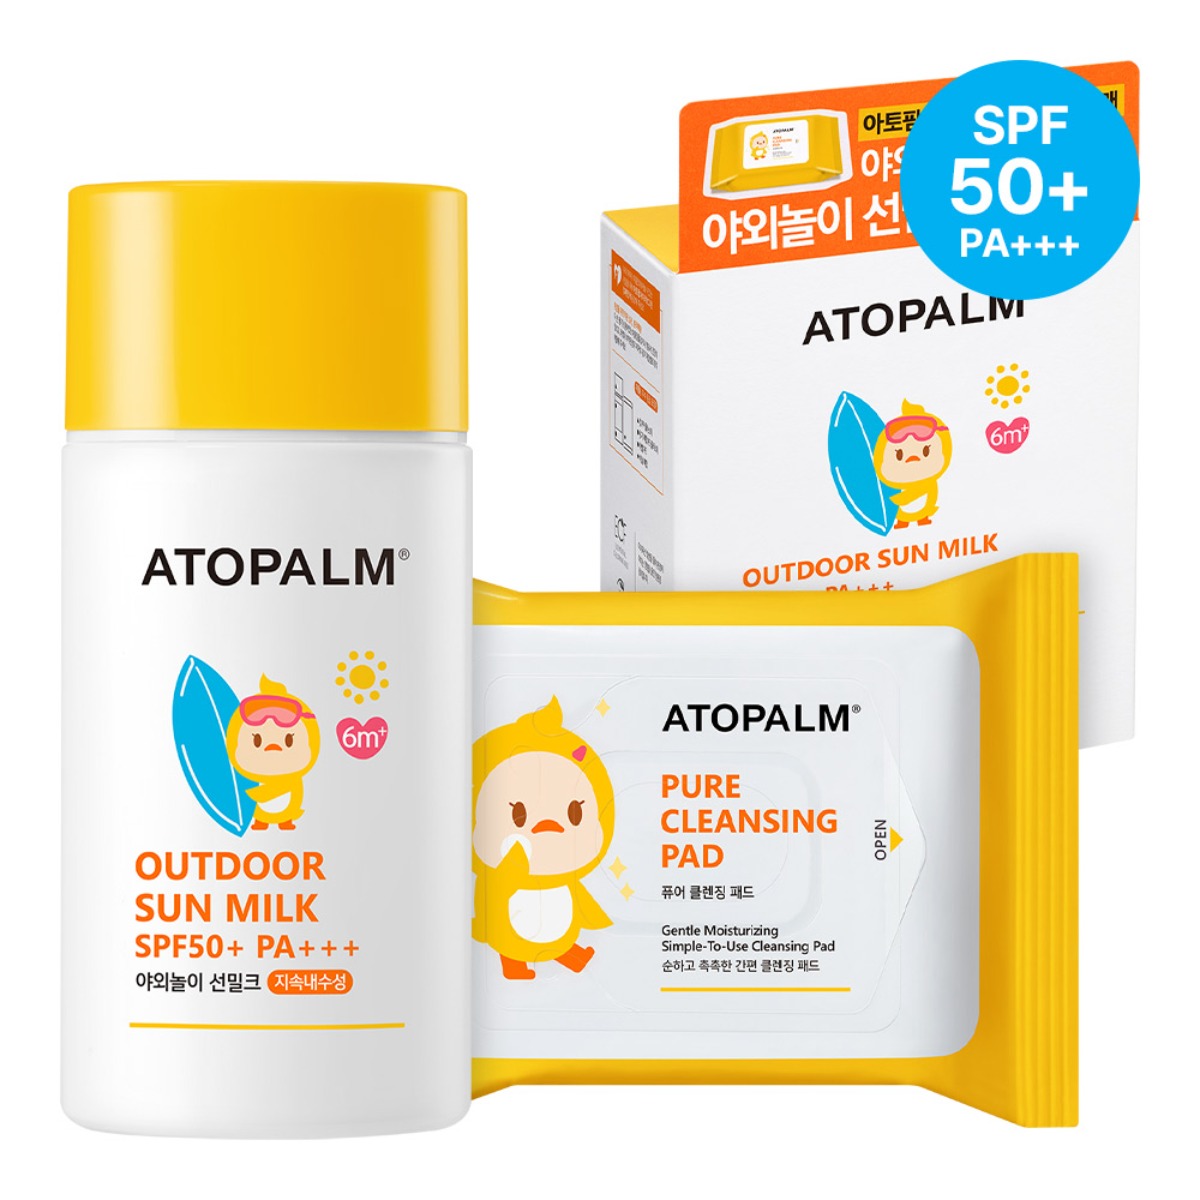 Kem chống nắng và giấy tẩy trang cho bé set ATOPALM Outdoor Sun Milk thumbnail